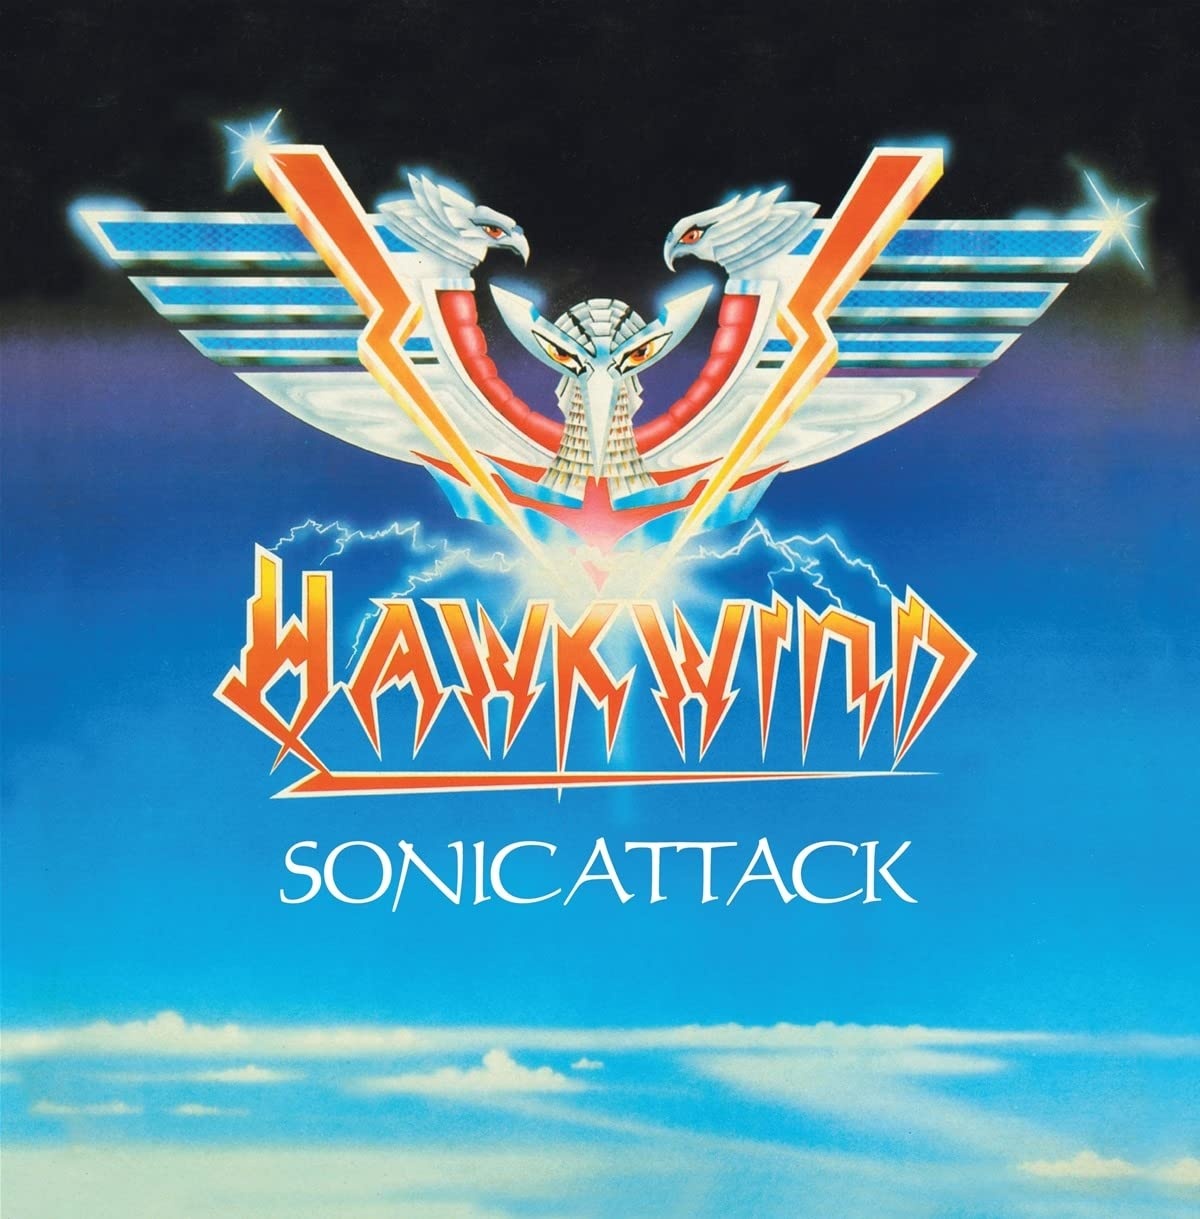 Sonic attack. Hawkwind Sonic Attack 1981. Hawkwind Sonic Attack. Hawkwind обложки.